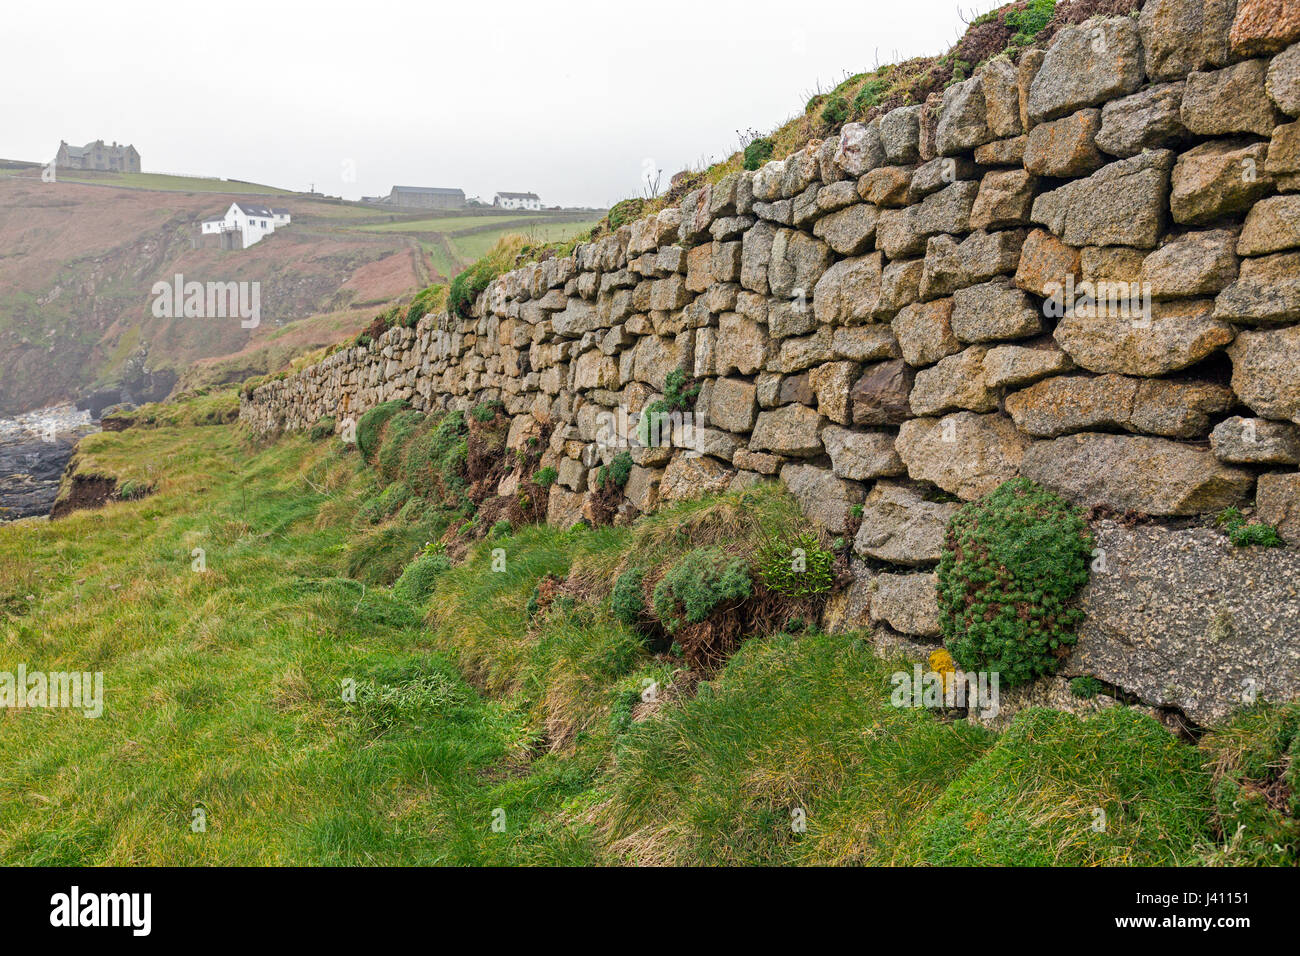 Una pietra a secco muro costruito da blocchi di granito di diverse dimensioni e colori a Cape Cornwall, Cornwall, Regno Unito Foto Stock